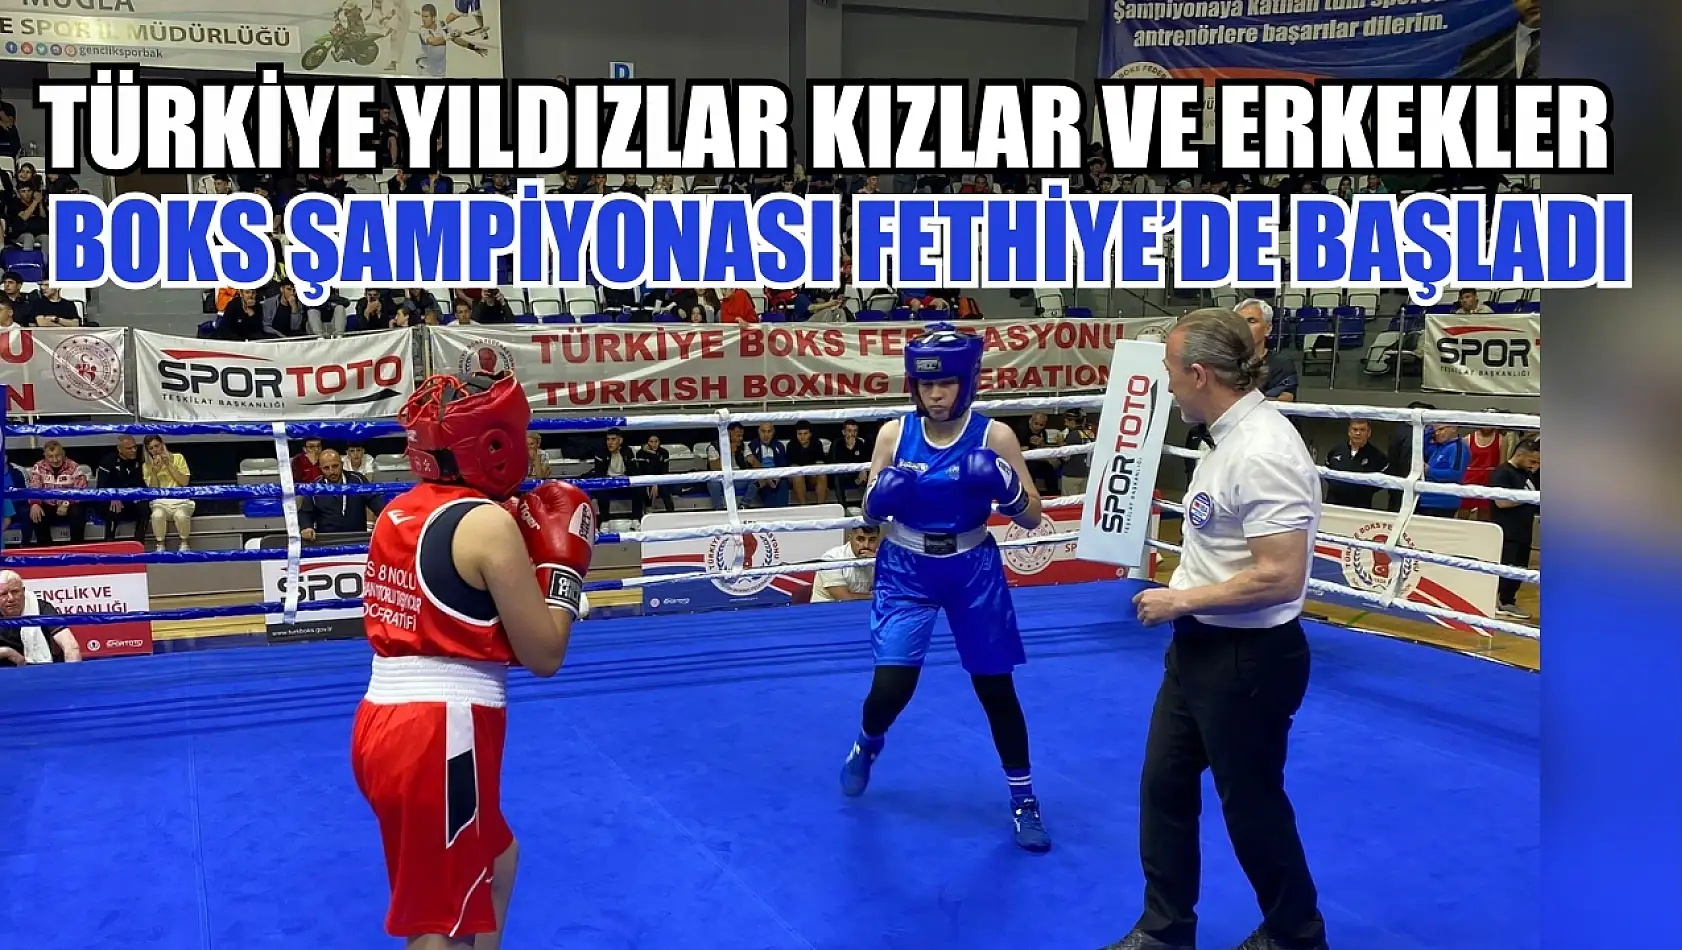 Türkiye Yıldızlar Kızlar ve Erkekler Boks Şampiyonası Fethiye'de başladı